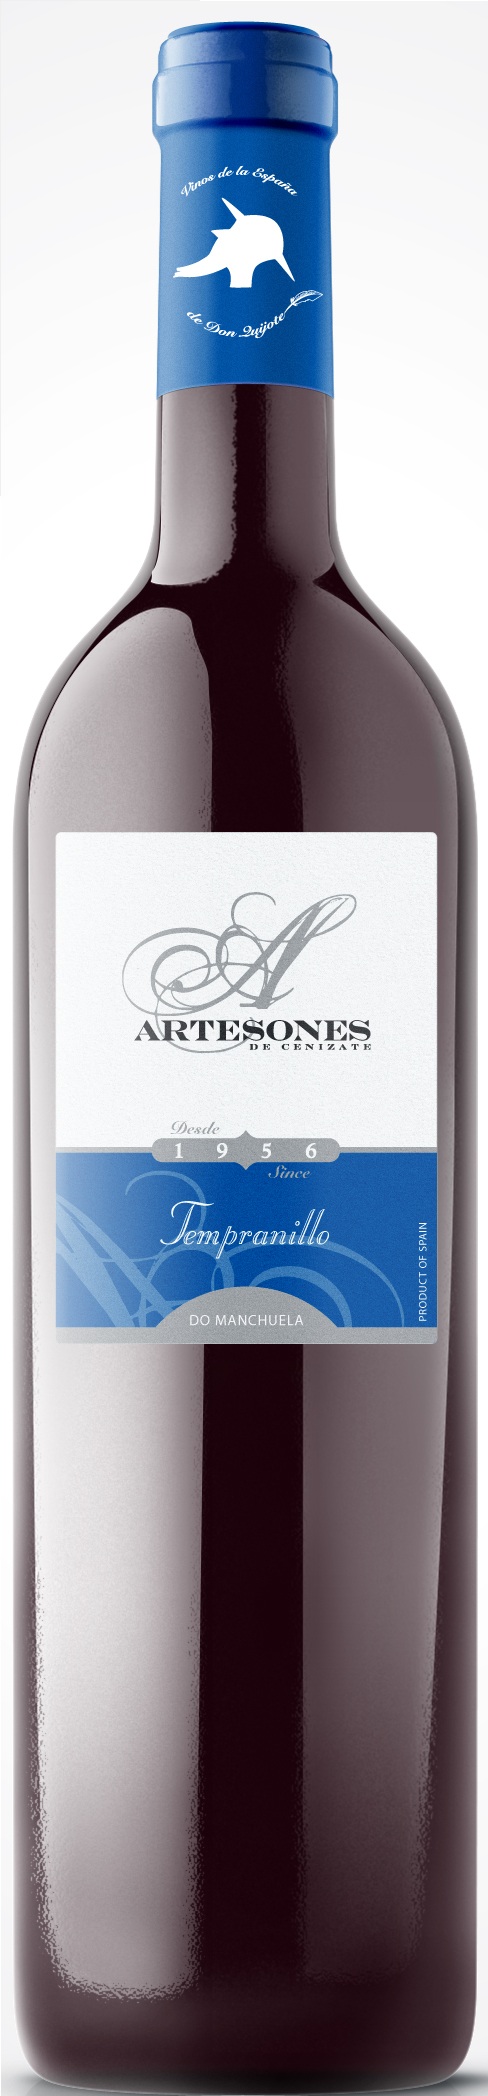 Bild von der Weinflasche Artesones Tempranillo